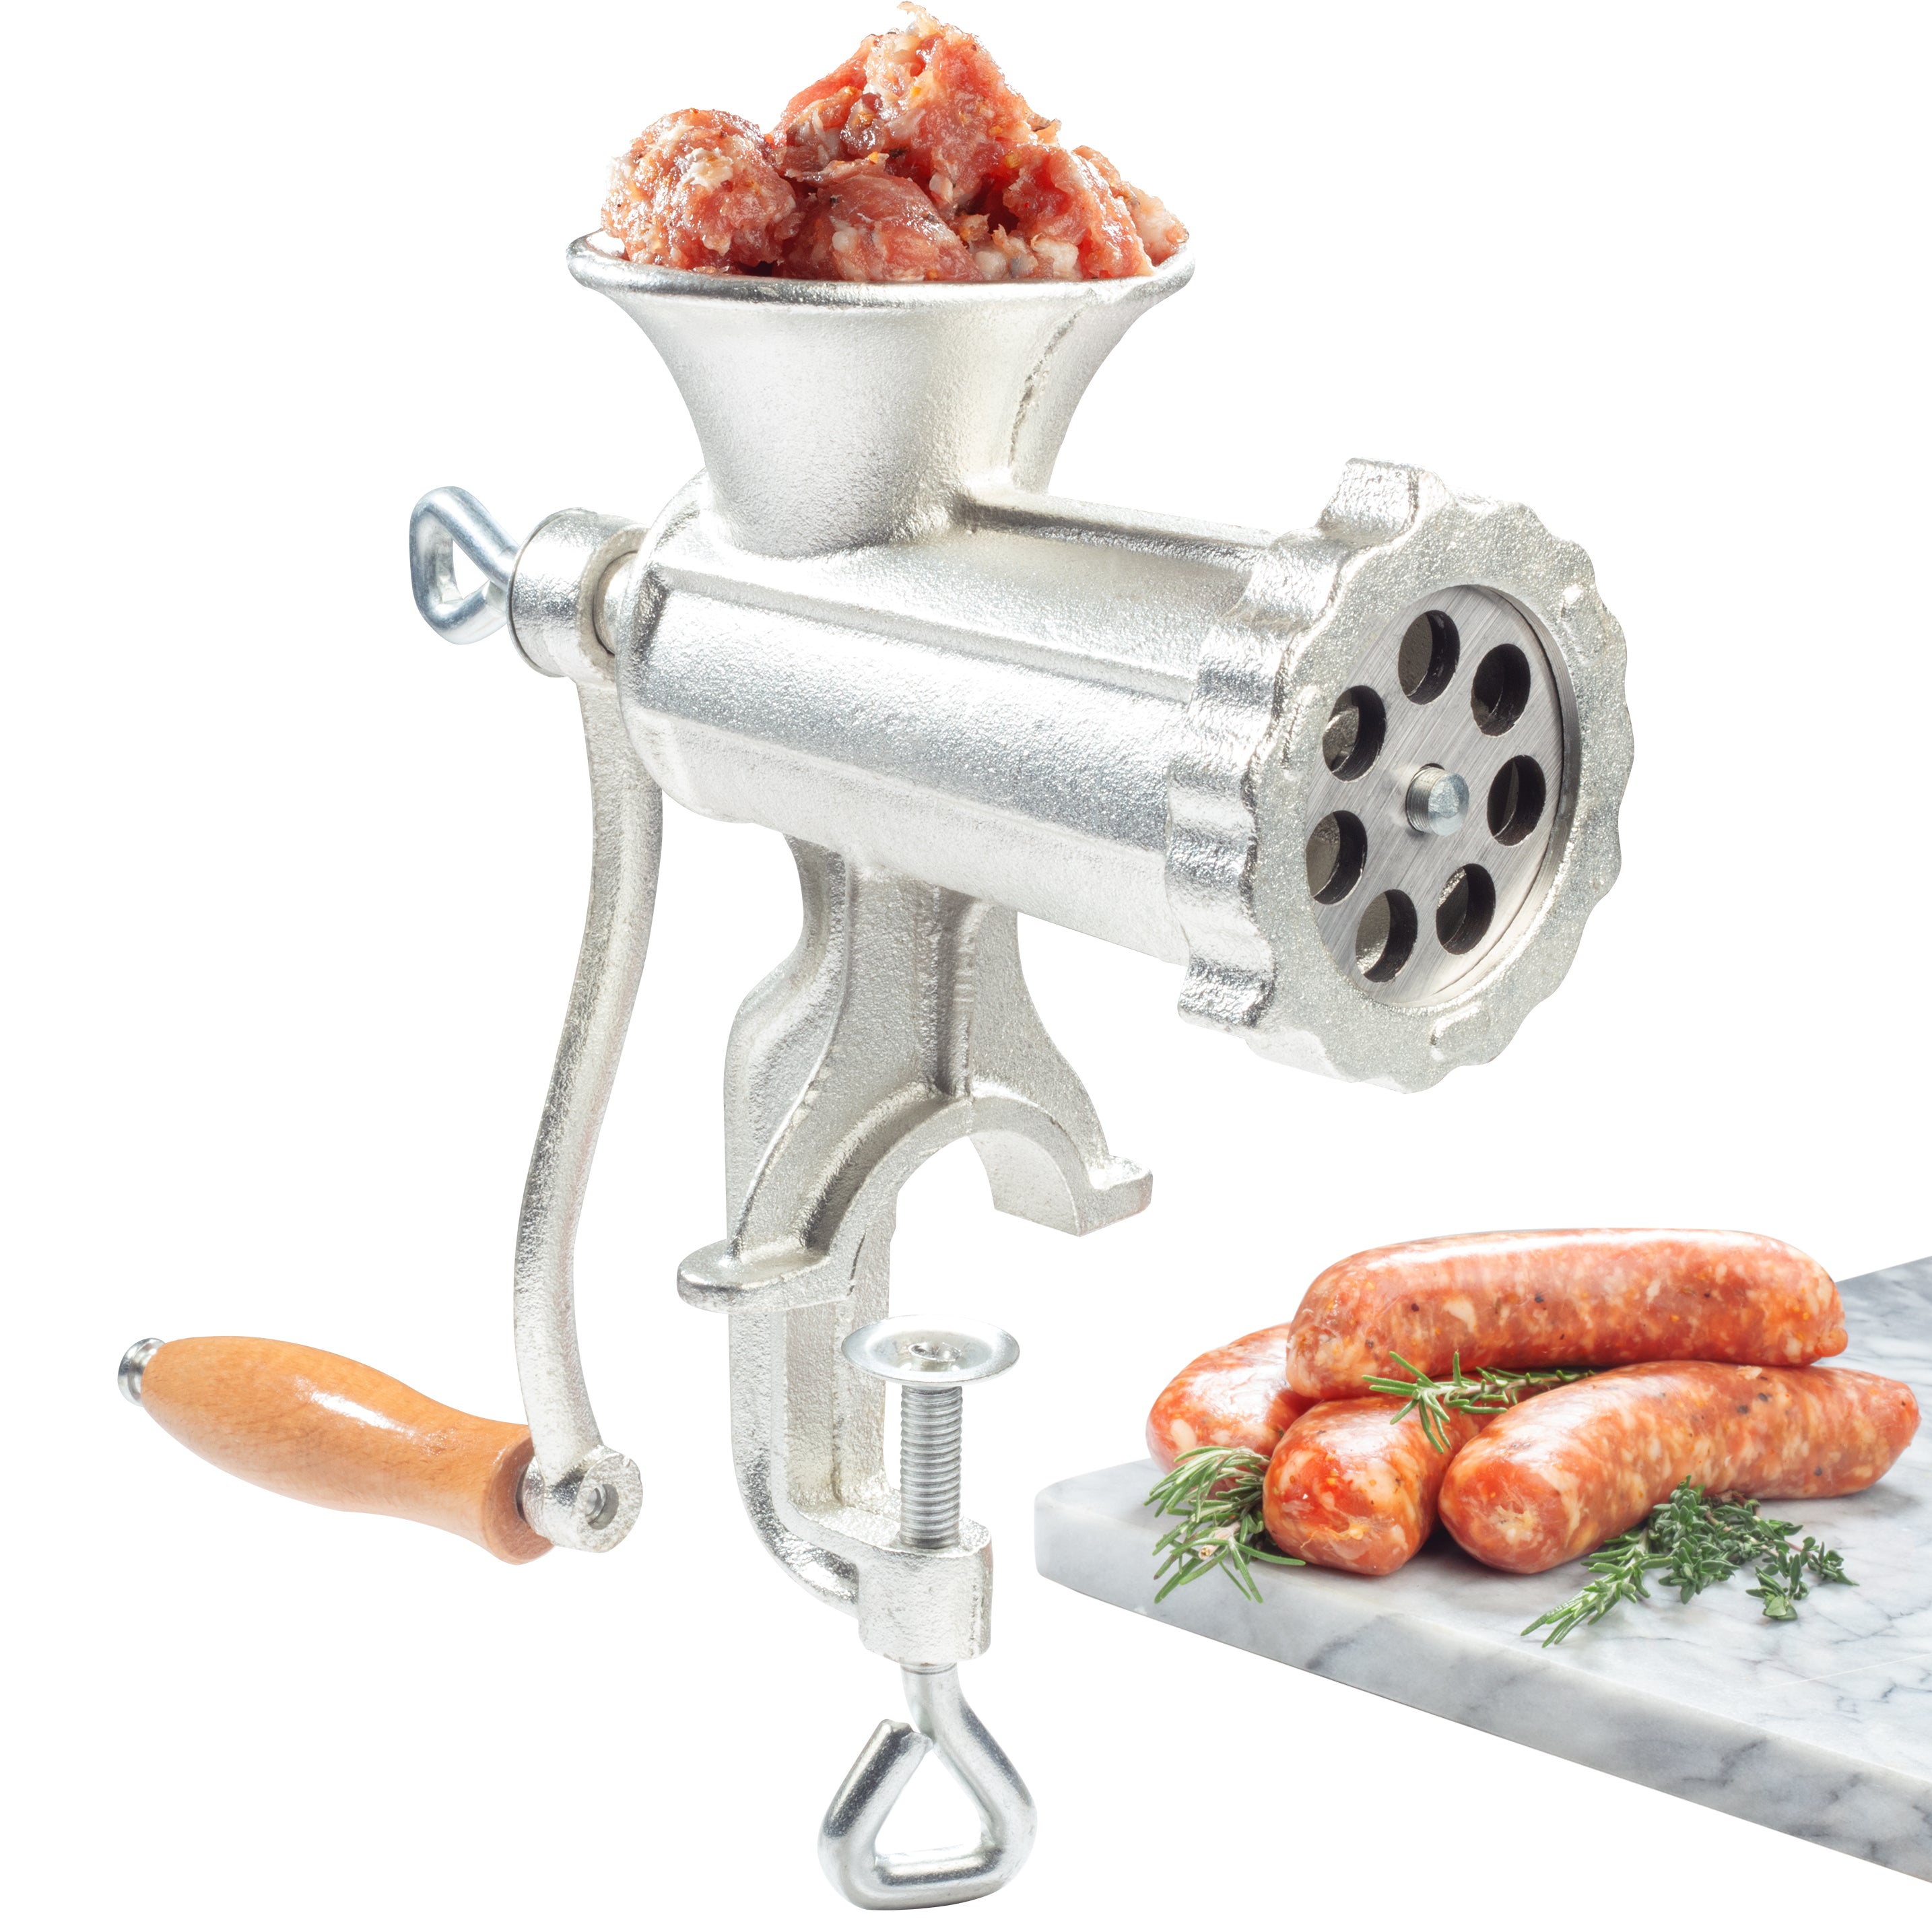 Kenwood Meat Grinder, 2100W, Kebbe Maker, SaUSage Maker - Food Mincer -  220-240 Volt 50 Hz - World Import